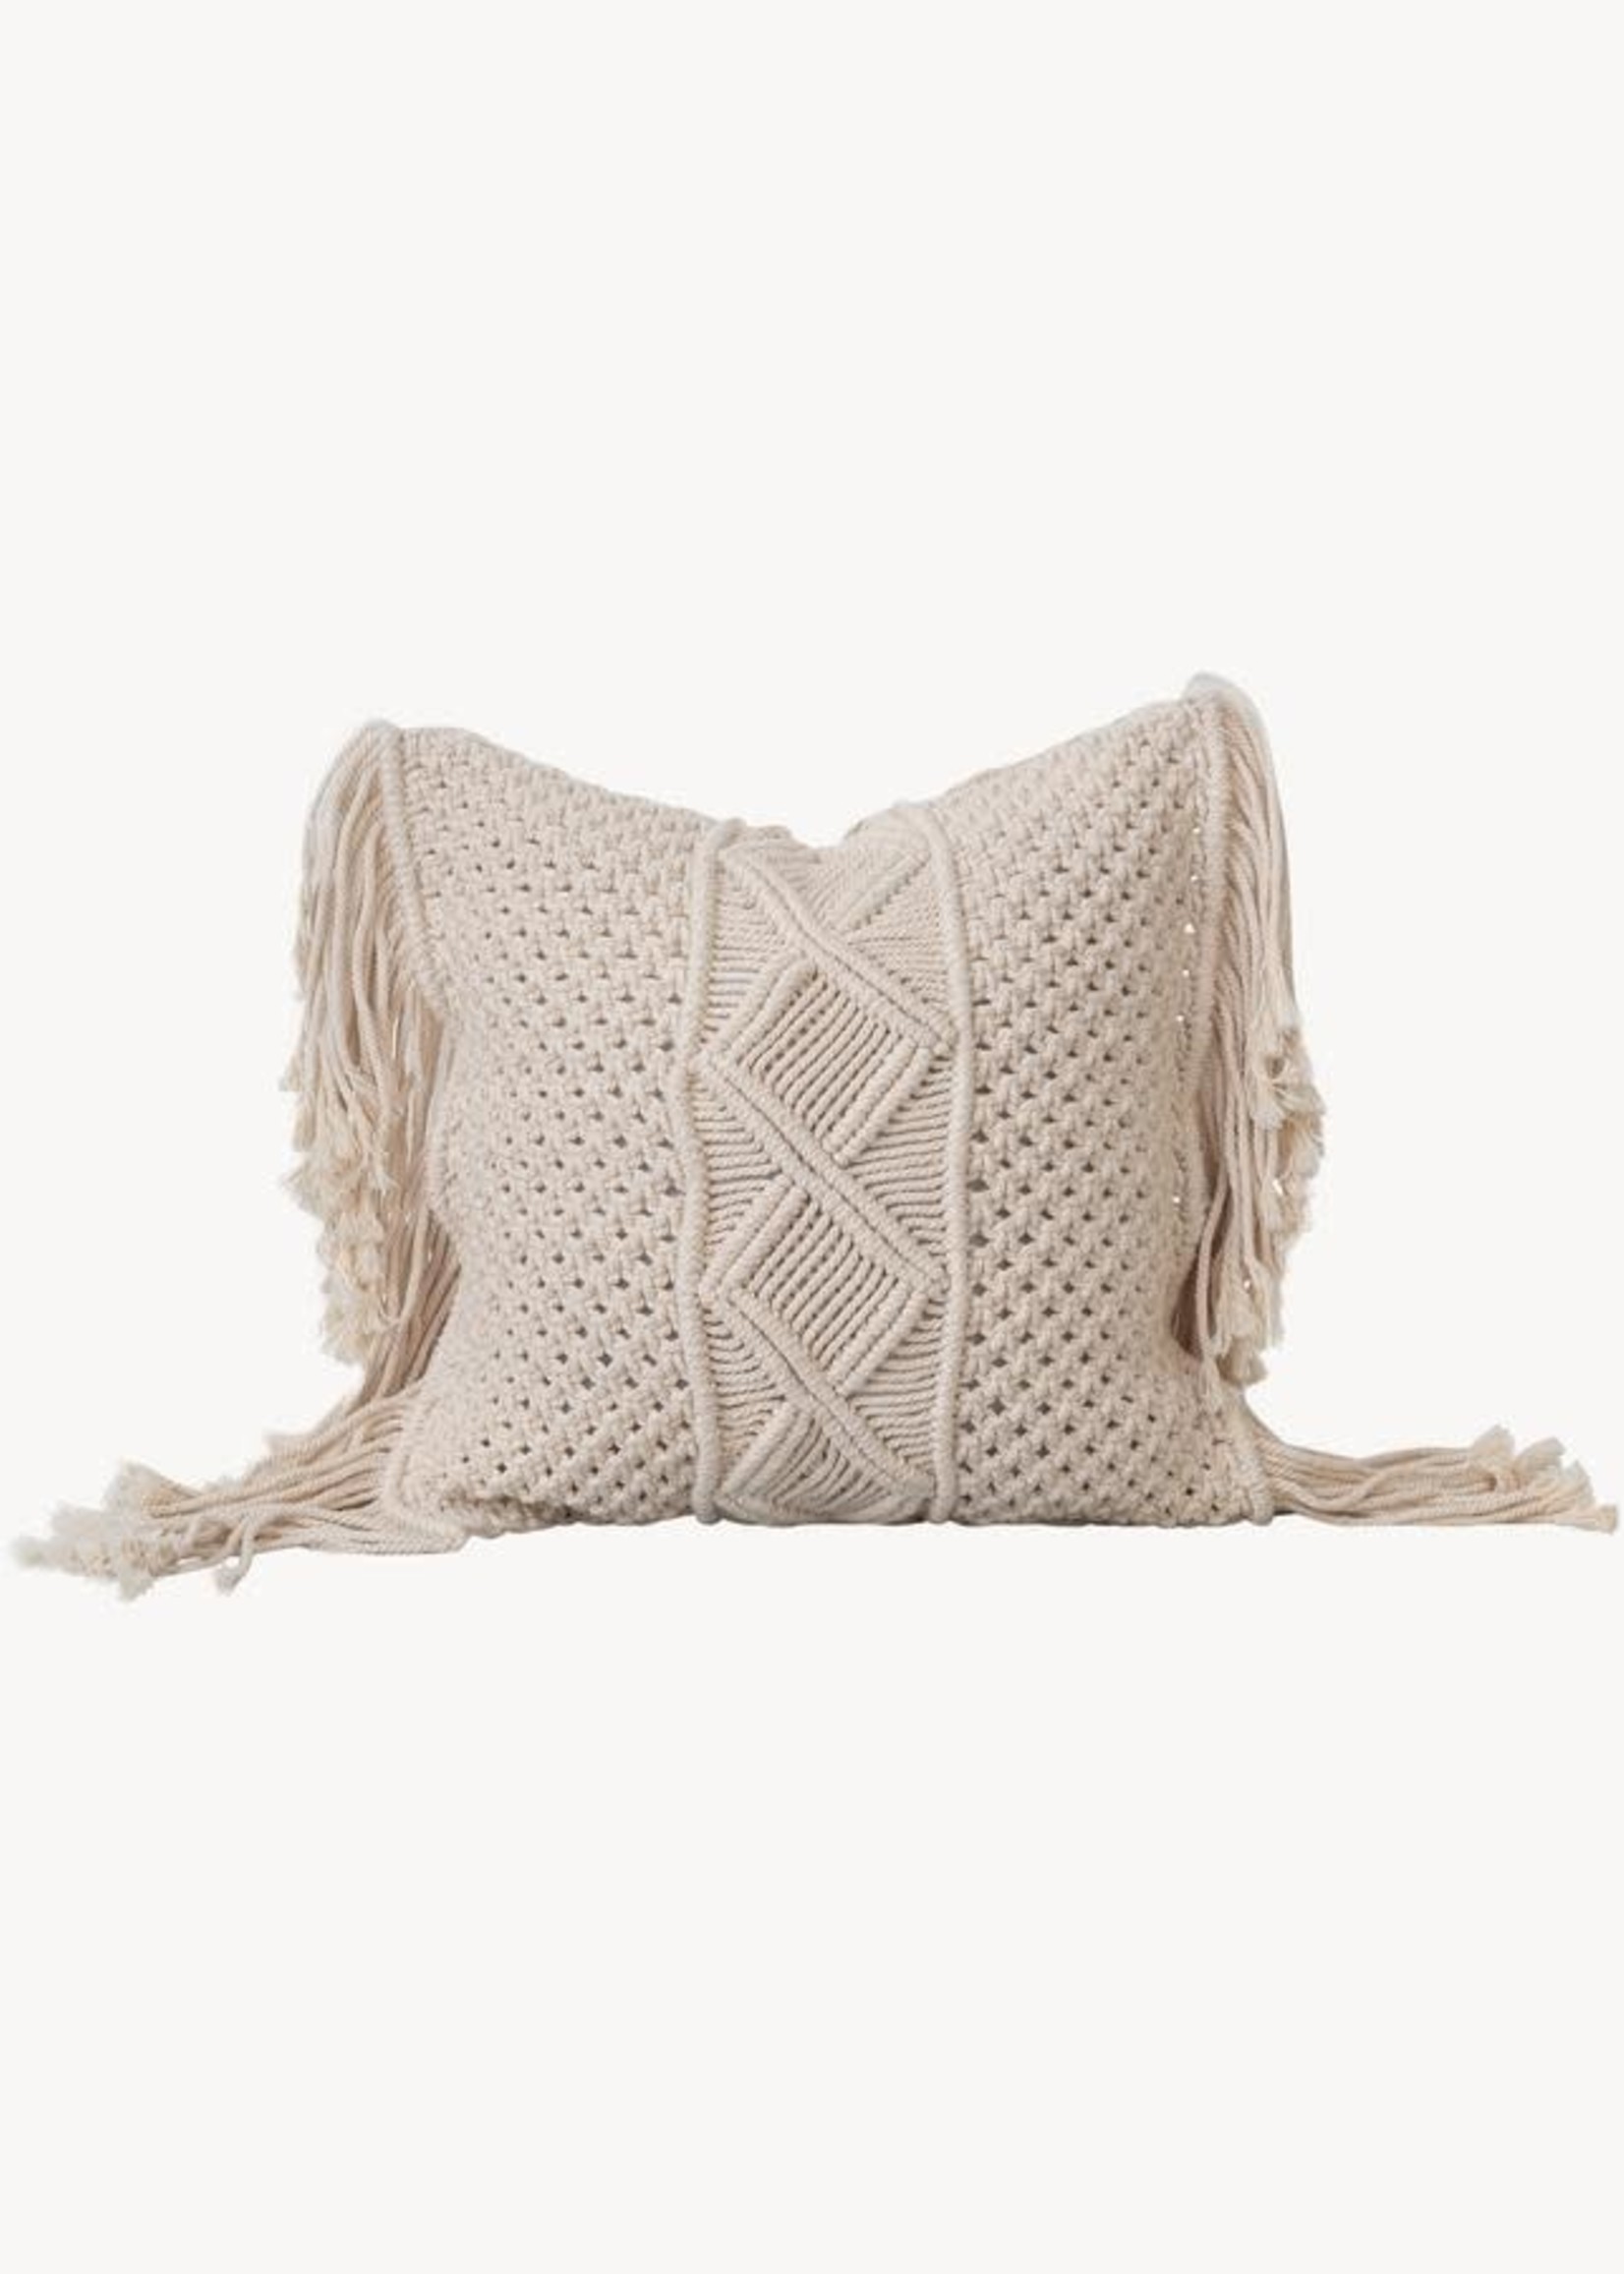 Pokoloko Macrame Pillow 15' x 15' White